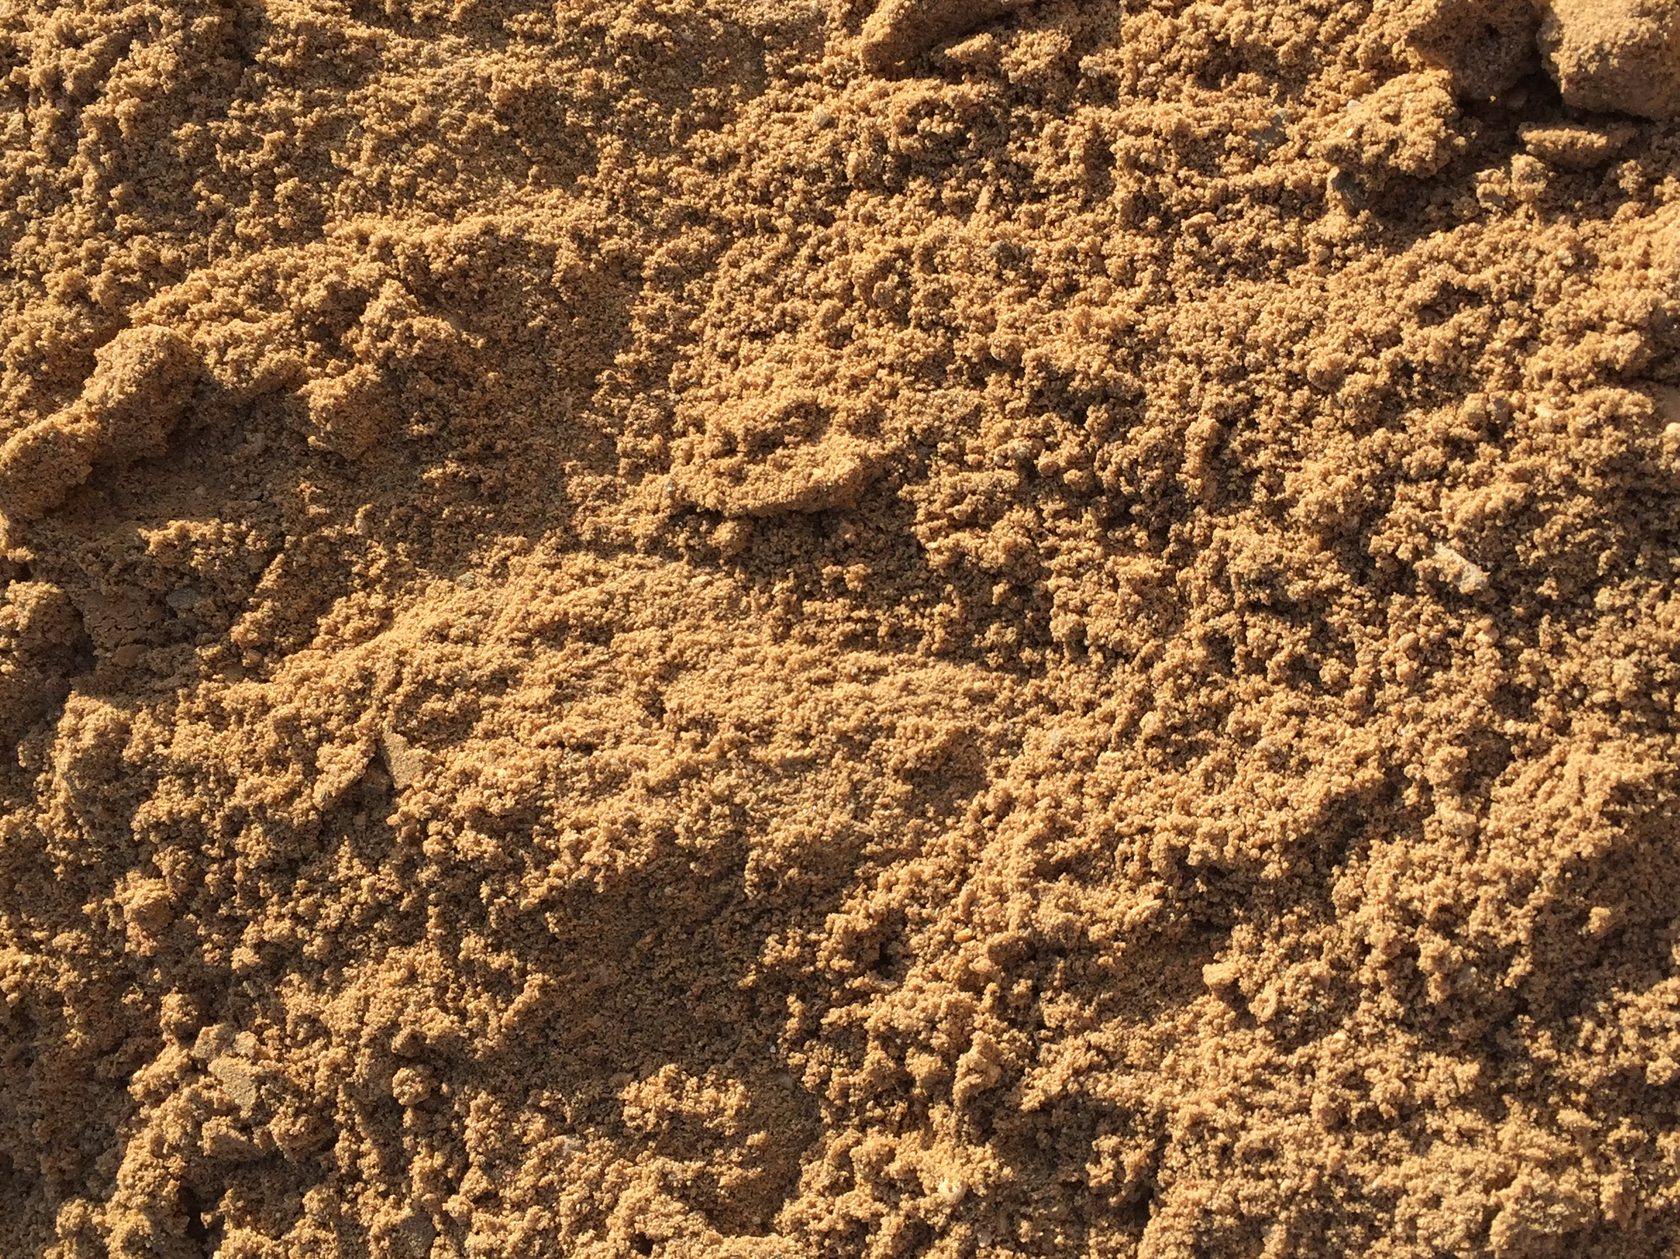 Крупный песок или мелкий щебень используемый в строительстве дорог